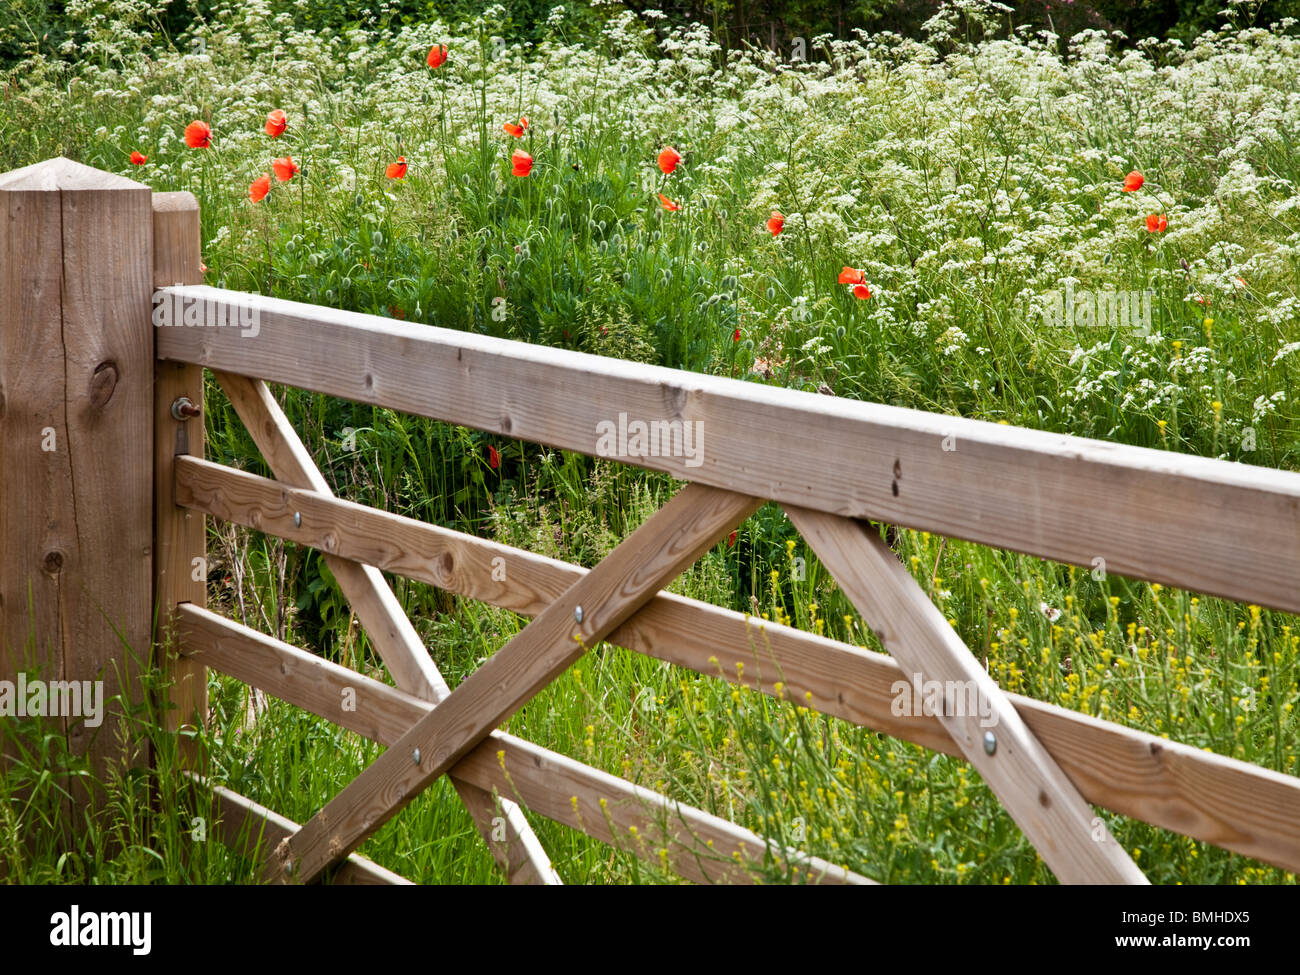 Fünf verjährt Holztor in ein Feld der Kuh Petersilie und wilden roten Mohnblumen im typisch englischen Sommer Landschaft. Stockfoto